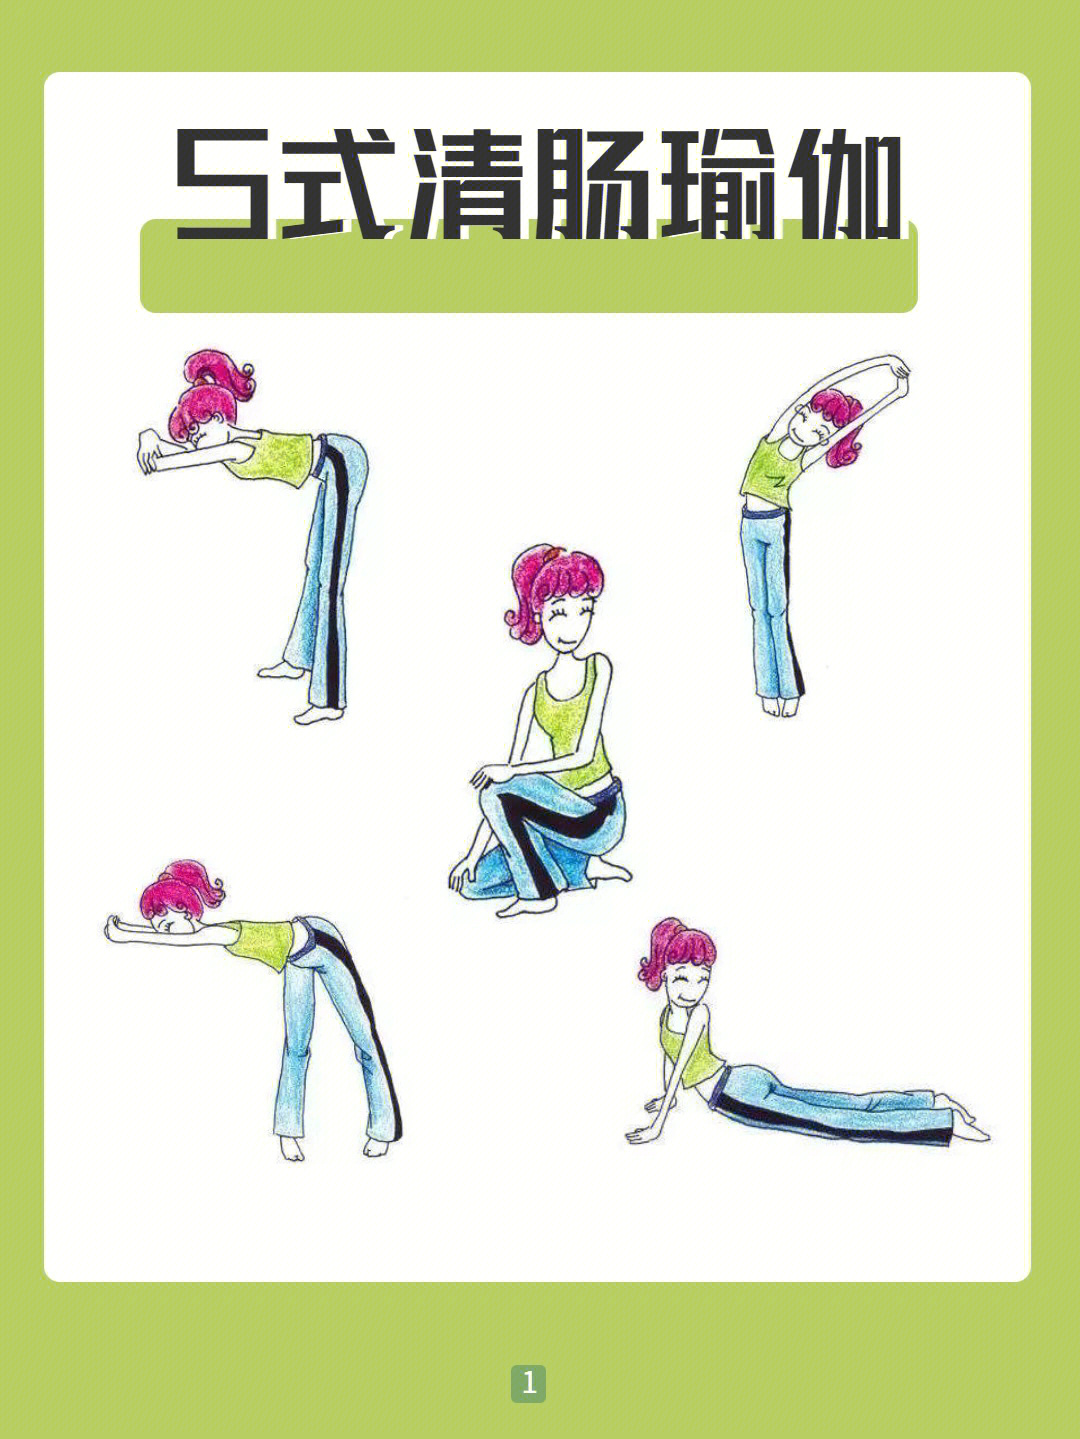 清肠瑜伽丨5式告别水桶腰